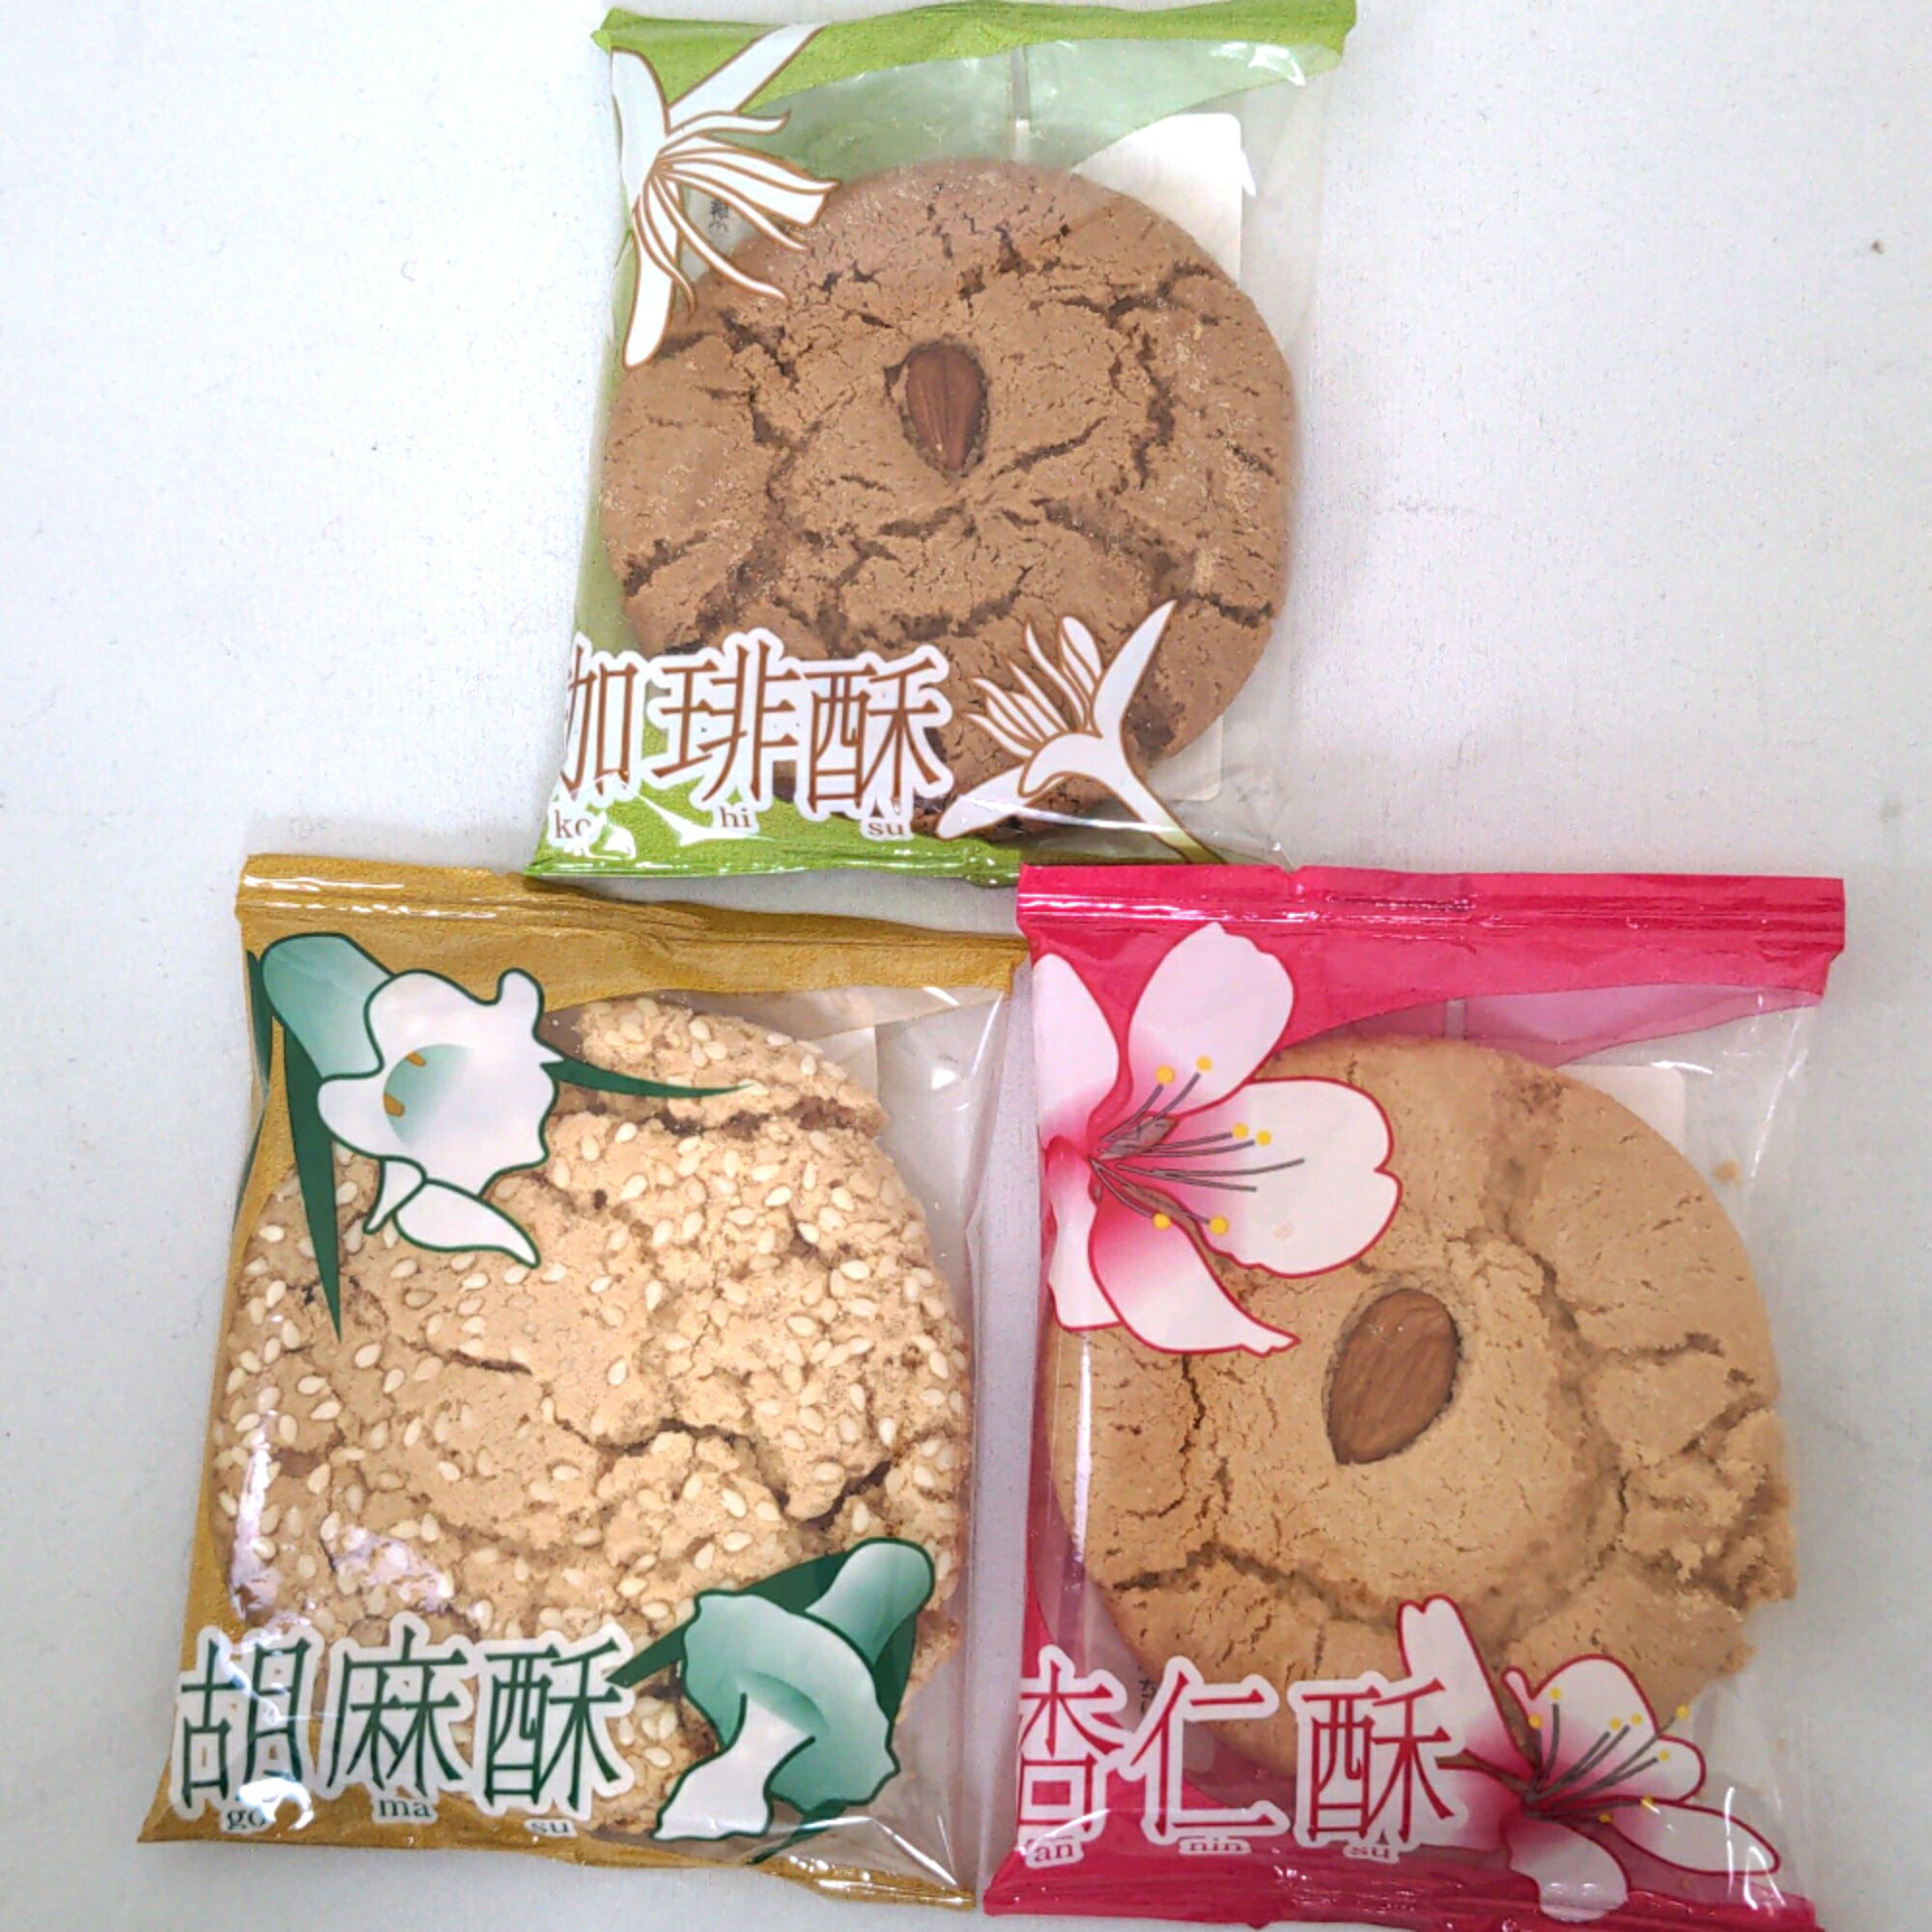 クッキー3個セット 杏仁酥[アーモンドクッキー] 胡麻酥[ごまクッキー] コーヒー酥[アーモンド入りコーヒークッキー] 日本国産 中華菓子